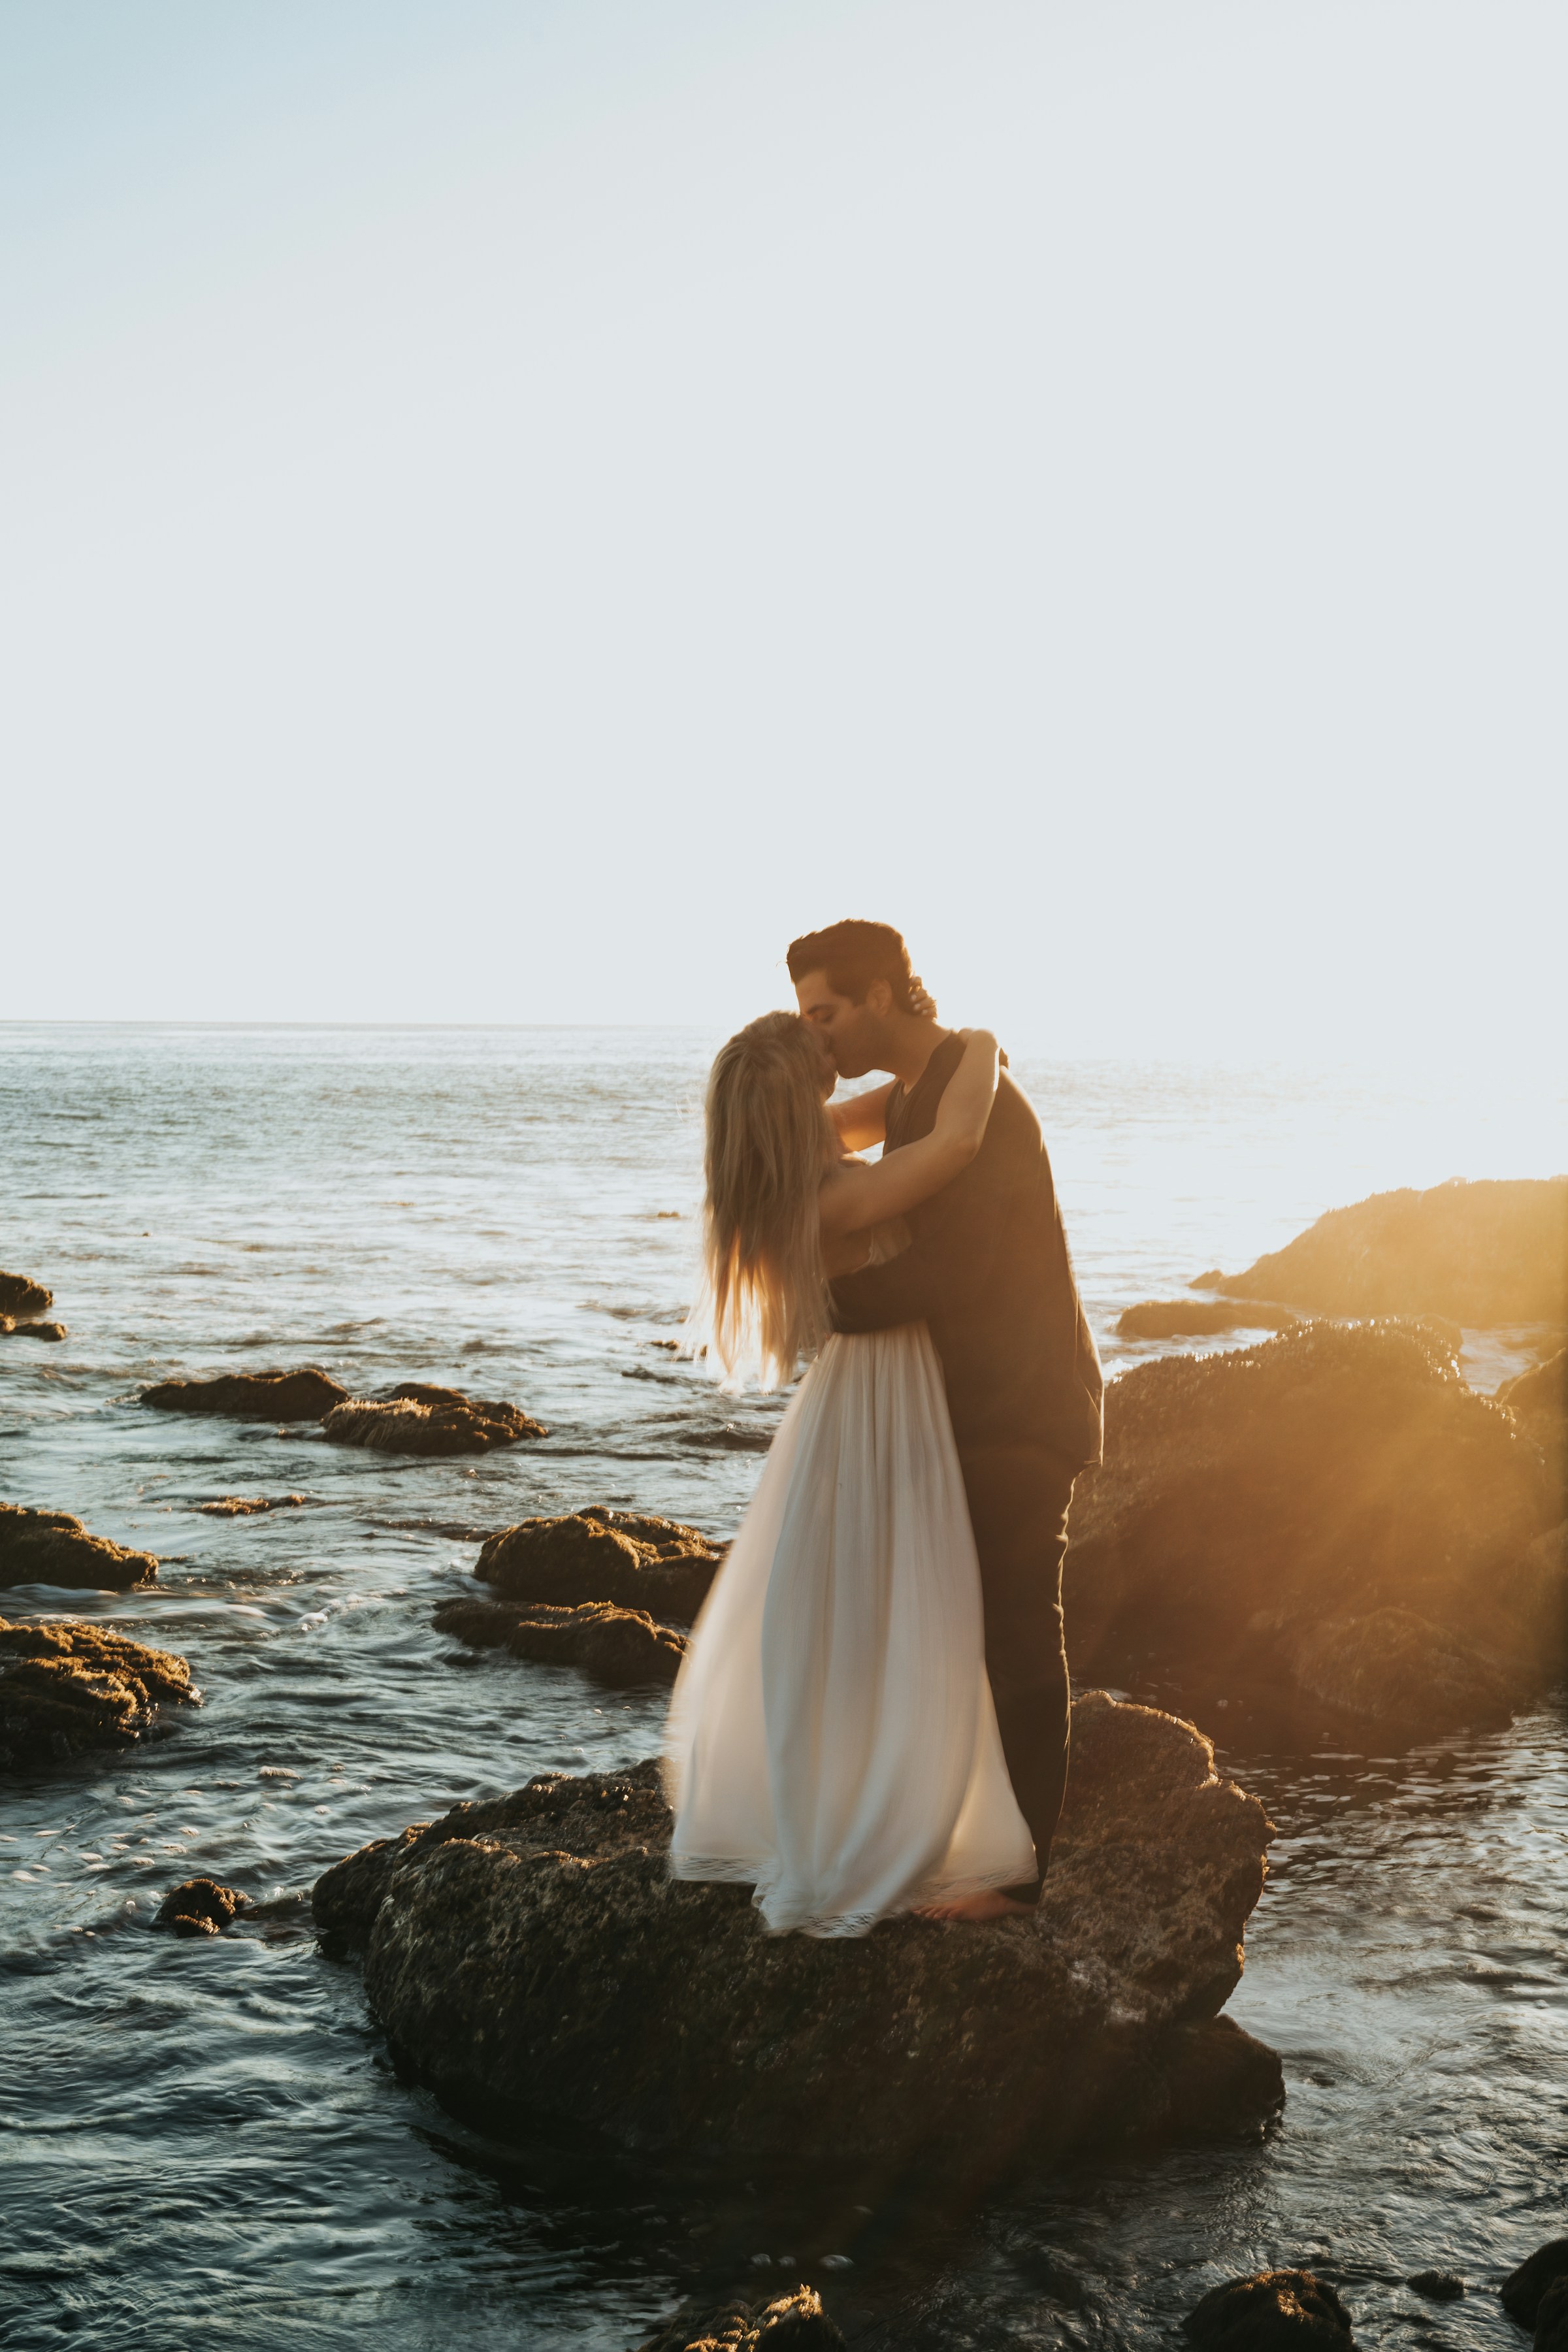 Un couple s'embrasse en se tenant au sommet d'un rocher sur une plage | Source : Unsplash